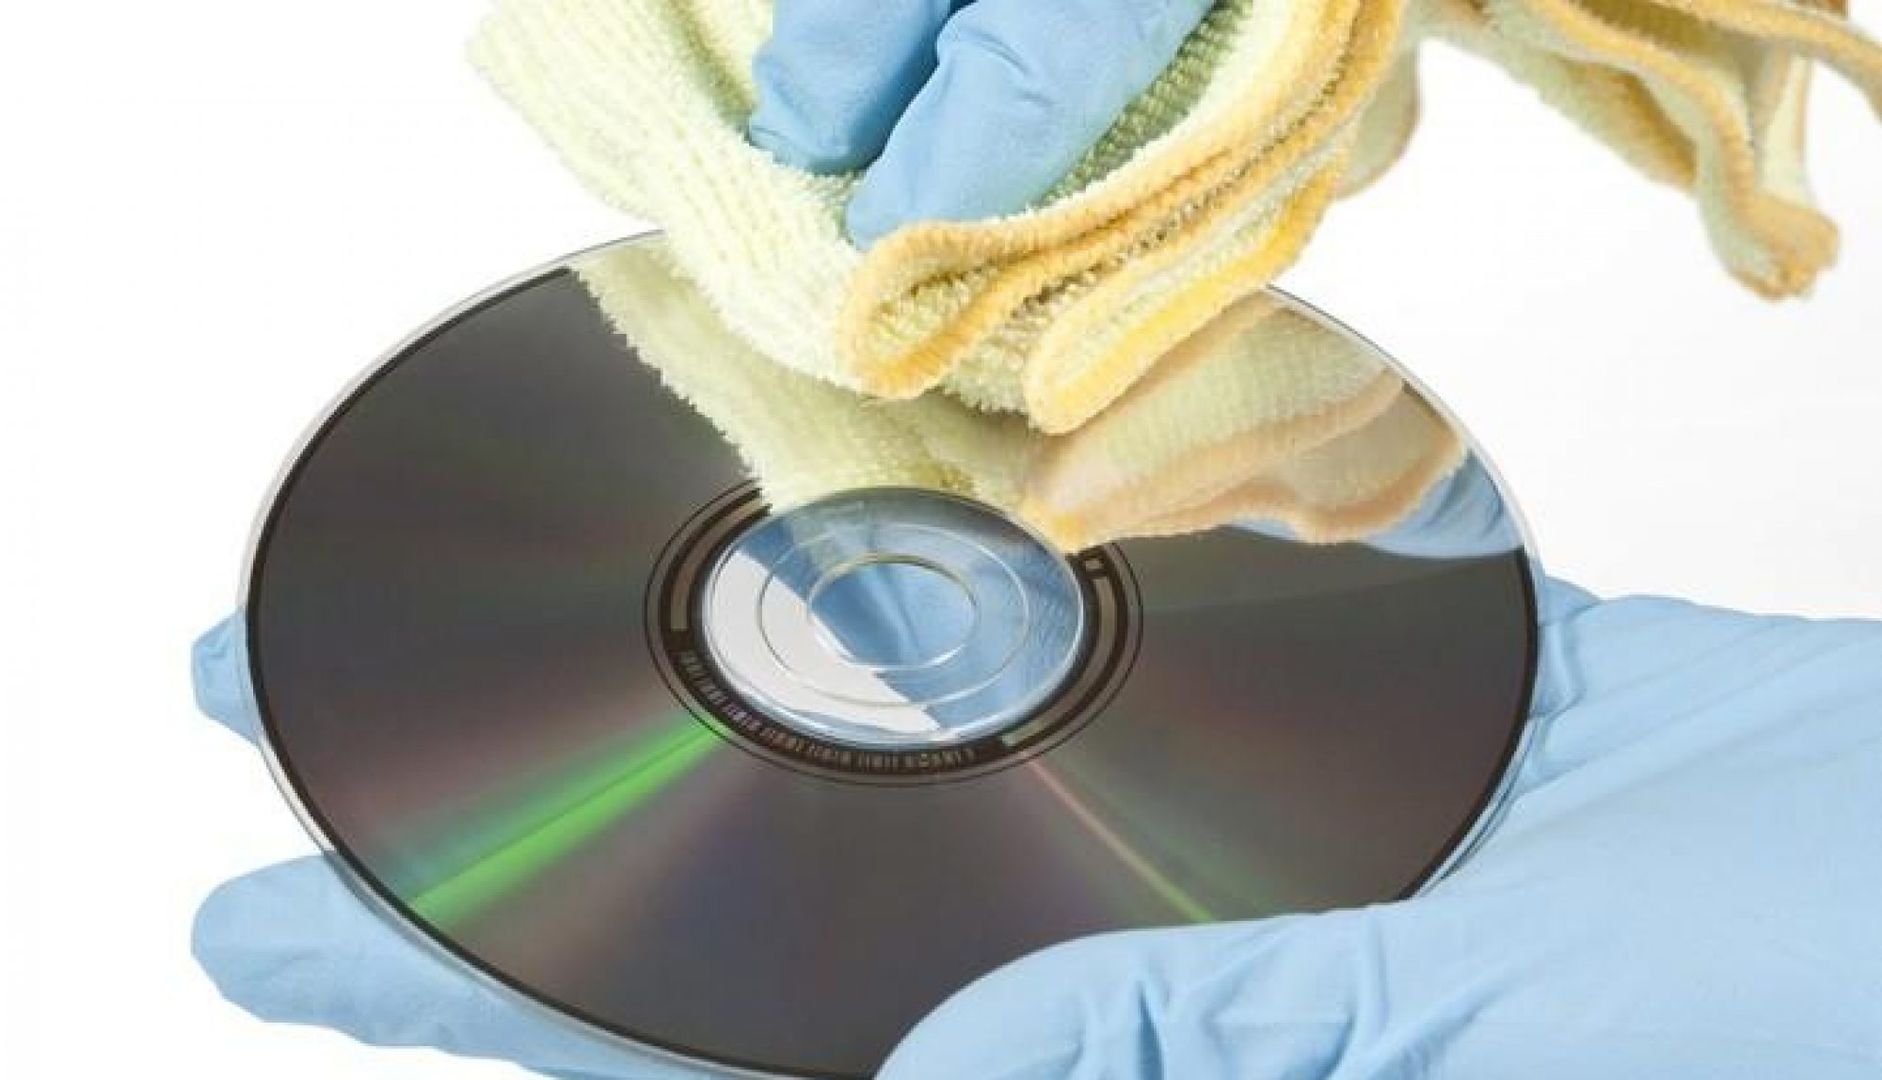 Поцарапанный диск. Крутящиеся компакт диски. Прибор для восстановления компакт дисков.  Полироль для компакт-дисков "Disc Repair".